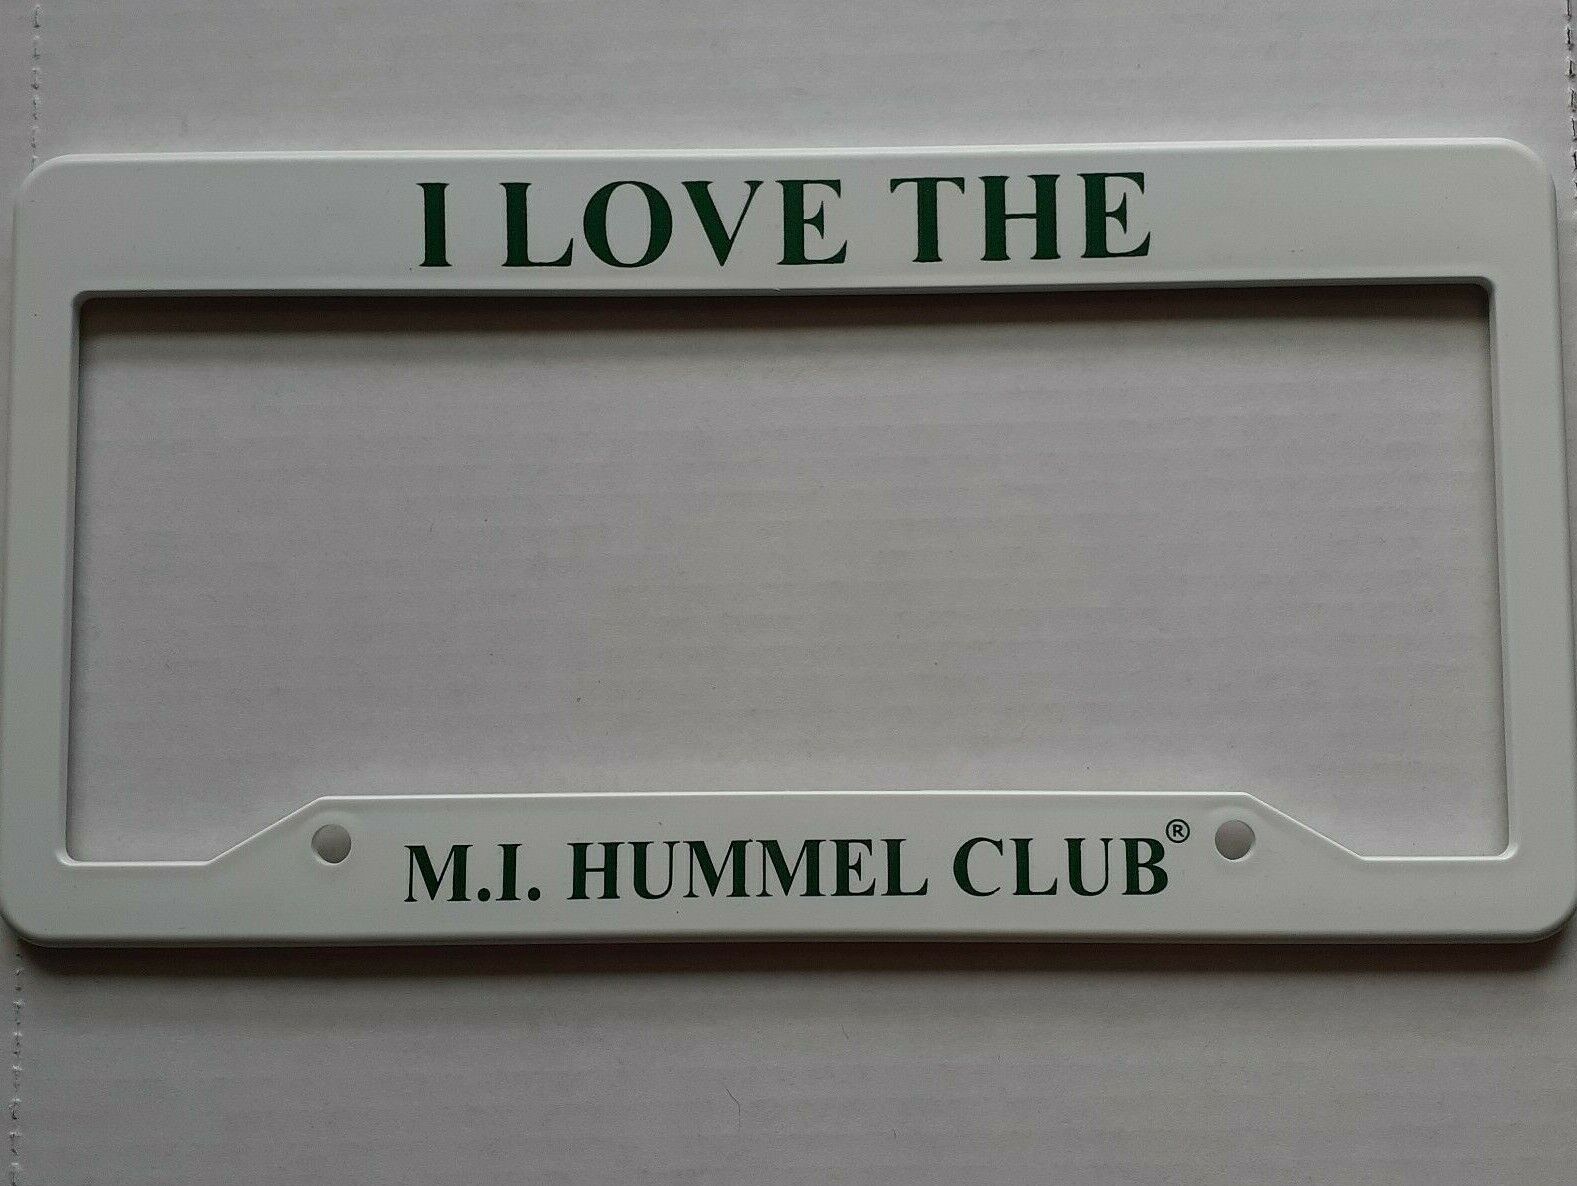 I Love the M.I. Hummel Club - vehicle license plate frame